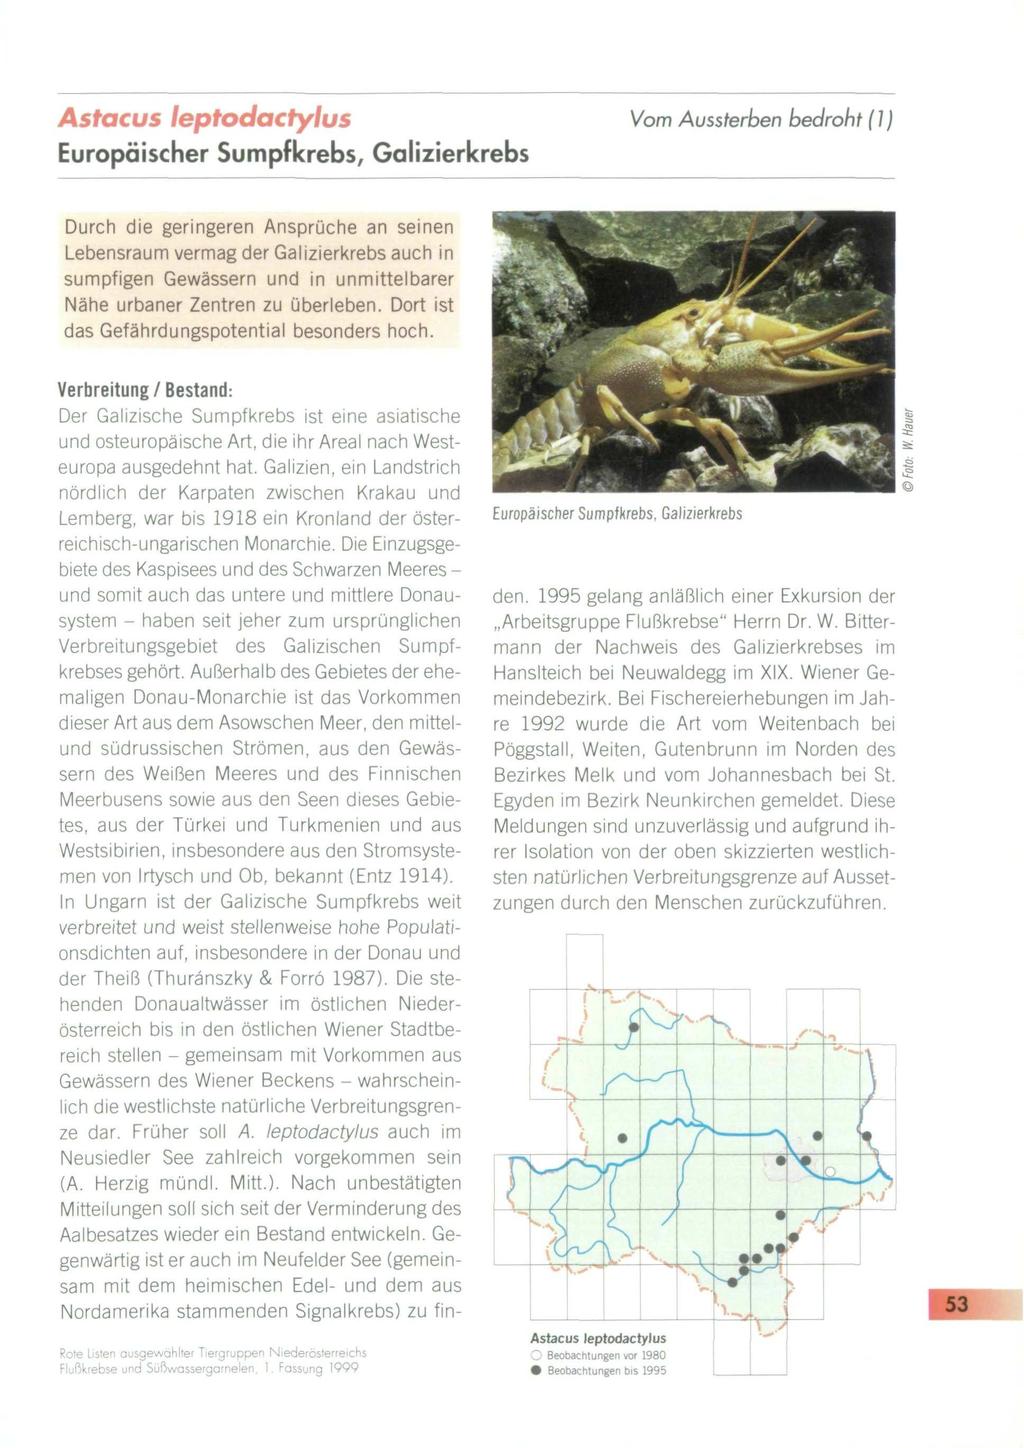 Astacus leptodactylus Europäischer Sumpficrebs, Galizierkrebs Vom Aussterben bedroht (1) Durch die geringeren Ansprüche an seinen Lebensraum vermag der Galizierkrebs auch in sumpfigen Gewässern und